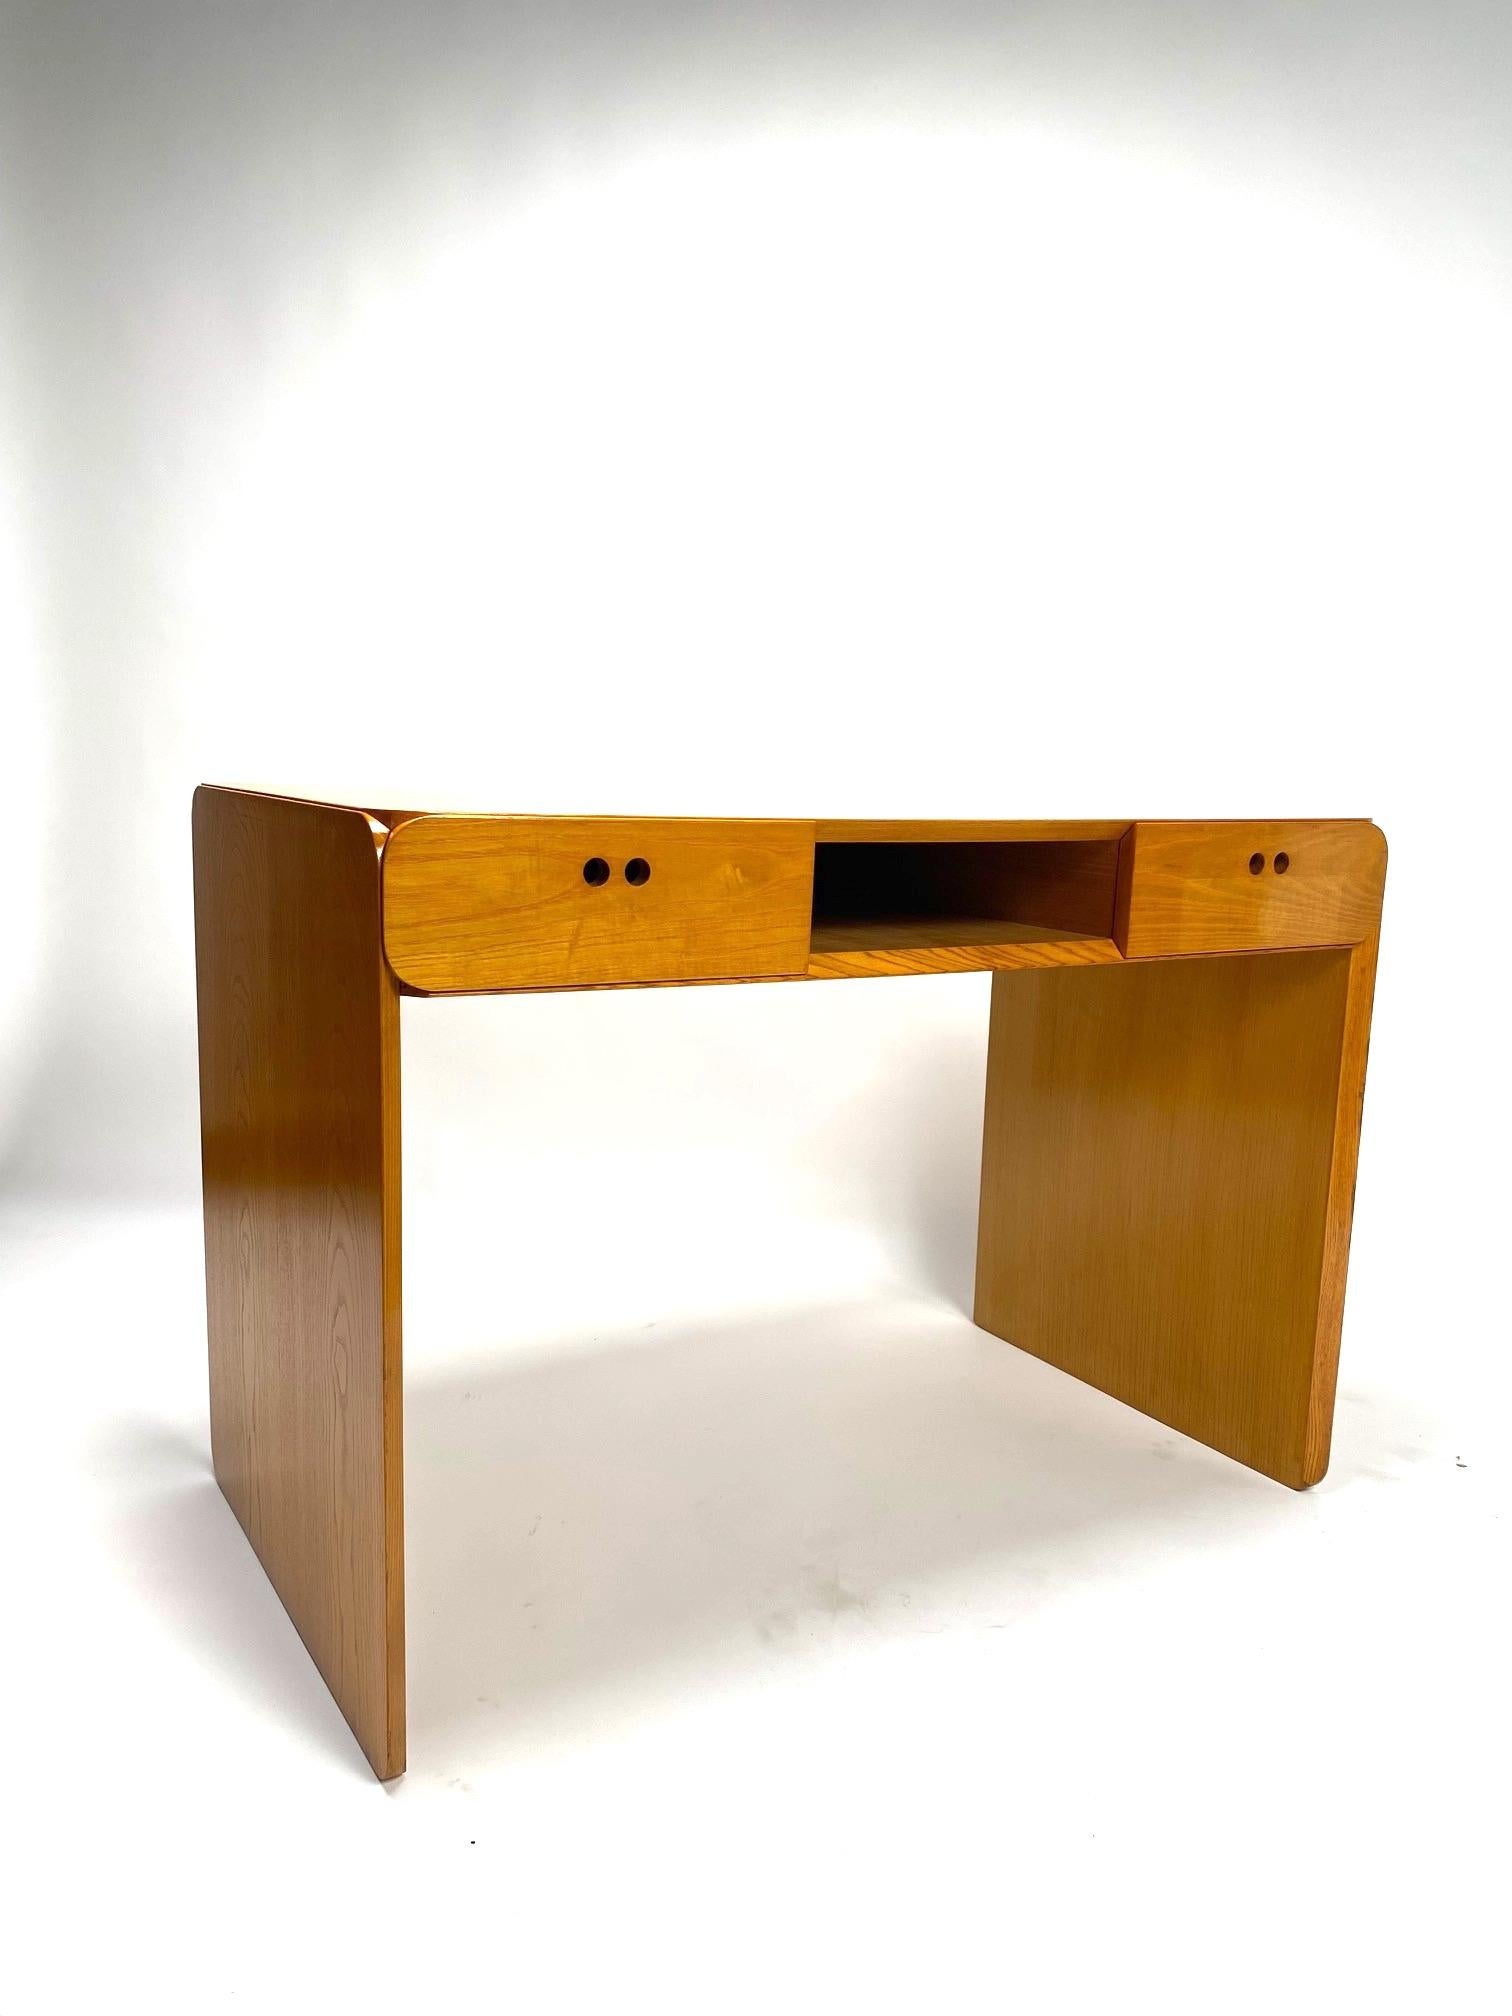 Bureau en bois clair du milieu du siècle par Derk Jan de Vries - Pays-Bas, années 1960.

C'est un bureau iconique et très fonctionnel, grâce à sa taille compacte il peut facilement être positionné dans différents contextes. 
Un design sobre mais